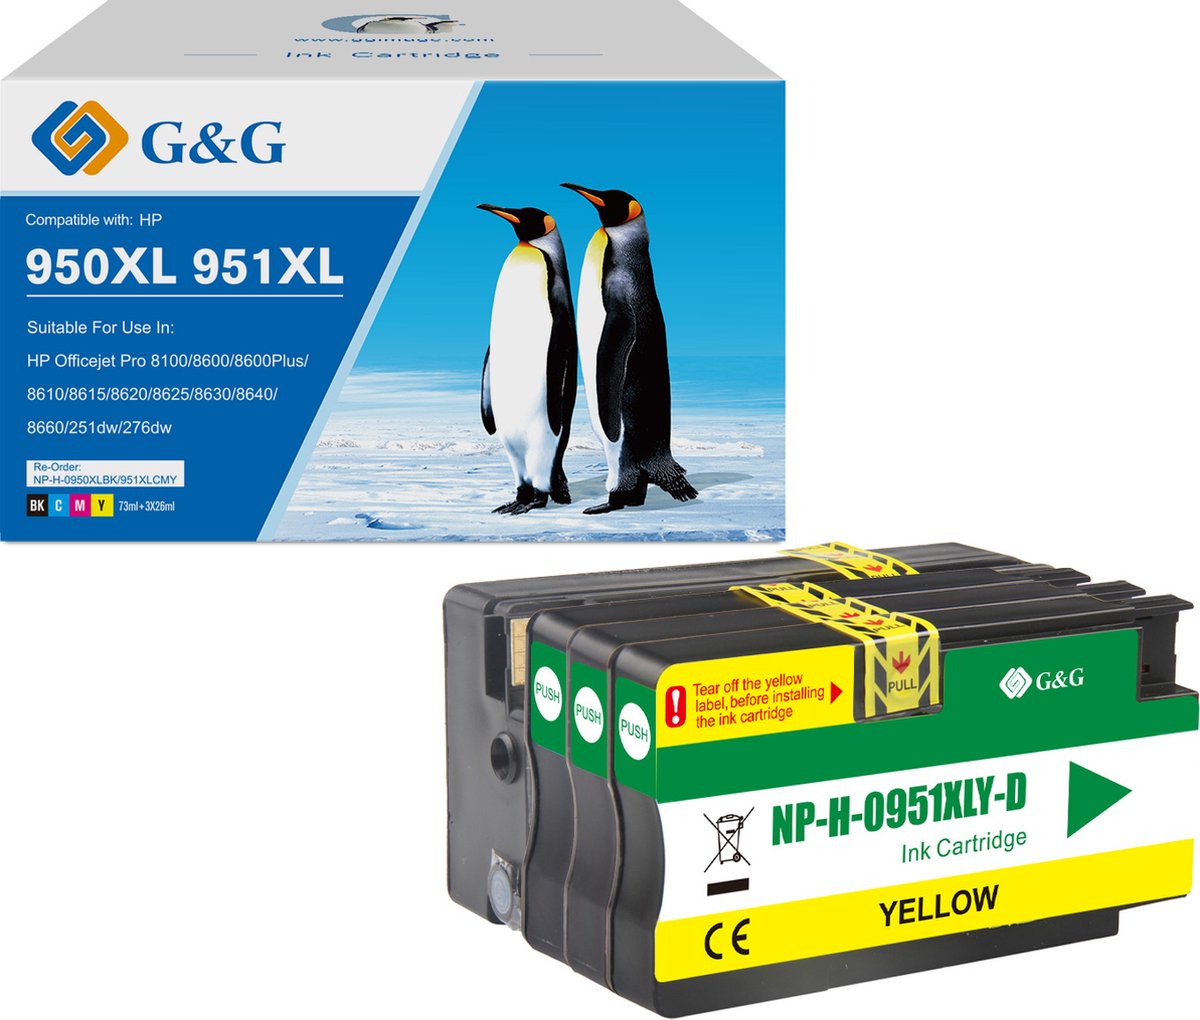 G&G Inktcartridge voor HP 950XL /951XL - /Zwart/Cyaan/Magenta/Geel/ Hoge Capaciteit / 4-Pack